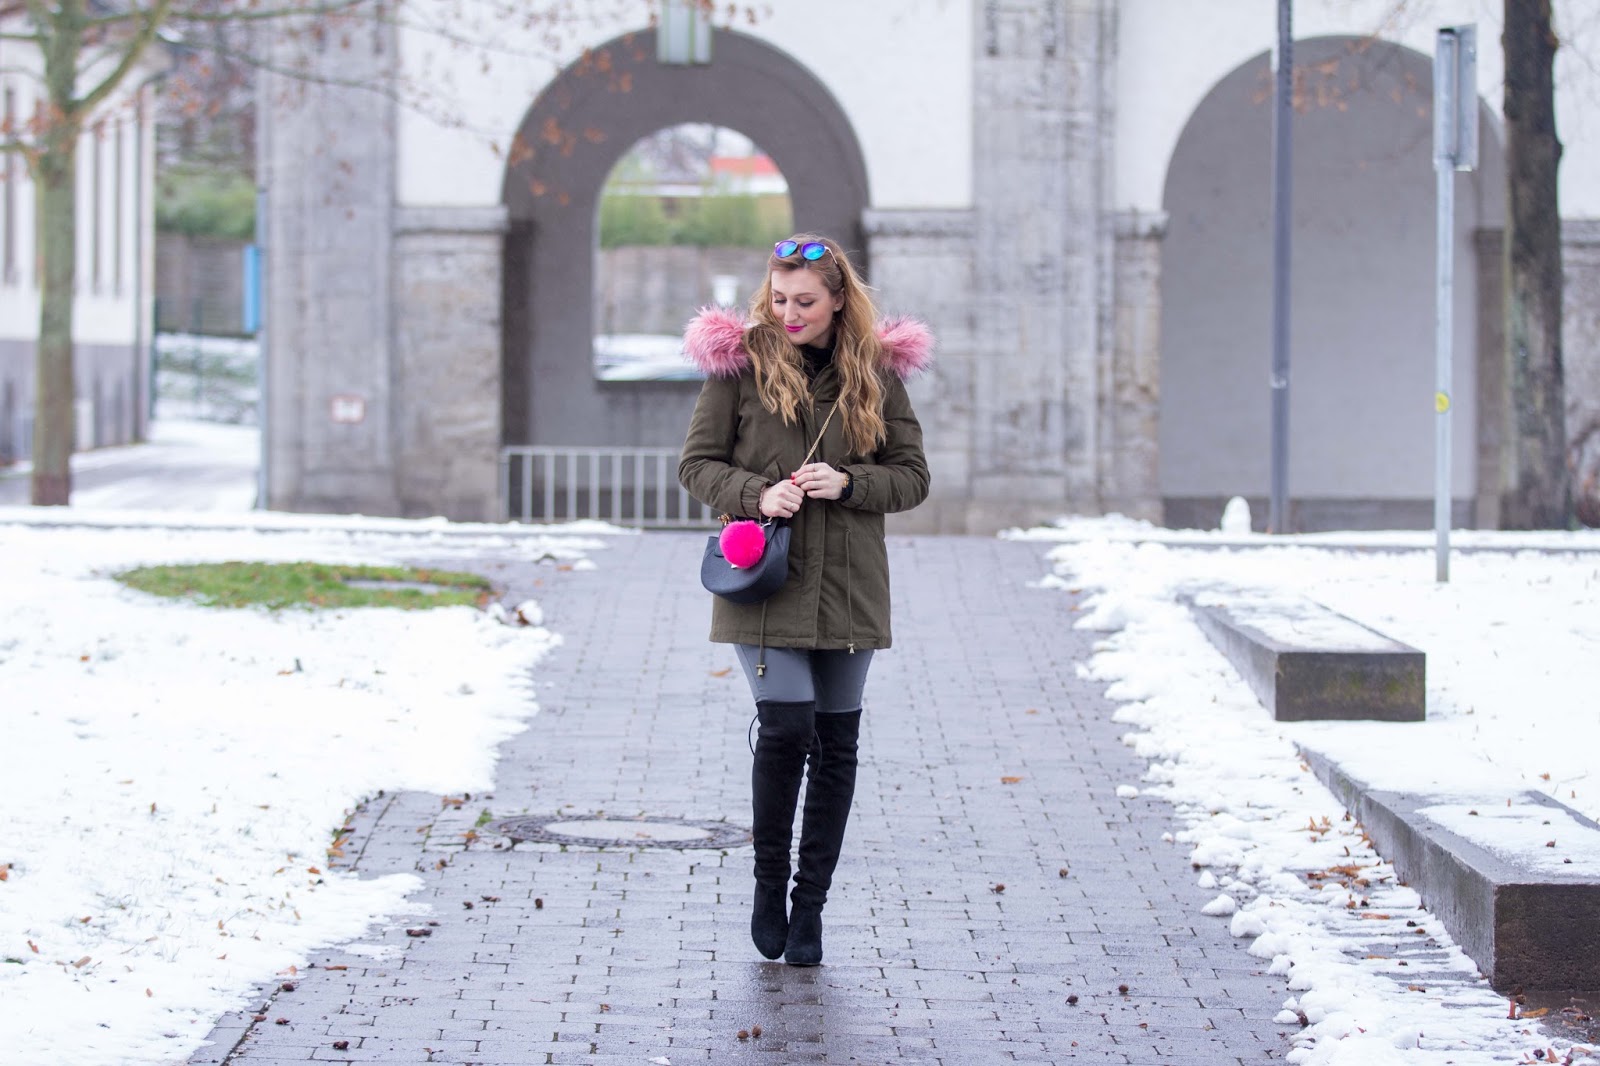 Casual-look-outfitispiration-winter-blogger-fashionstylebyjohanna-chloe-drew-lifestyleblogger-frankfurt-fashionblogger-blogger-aus-deutschland-deutsche-fashionblogger